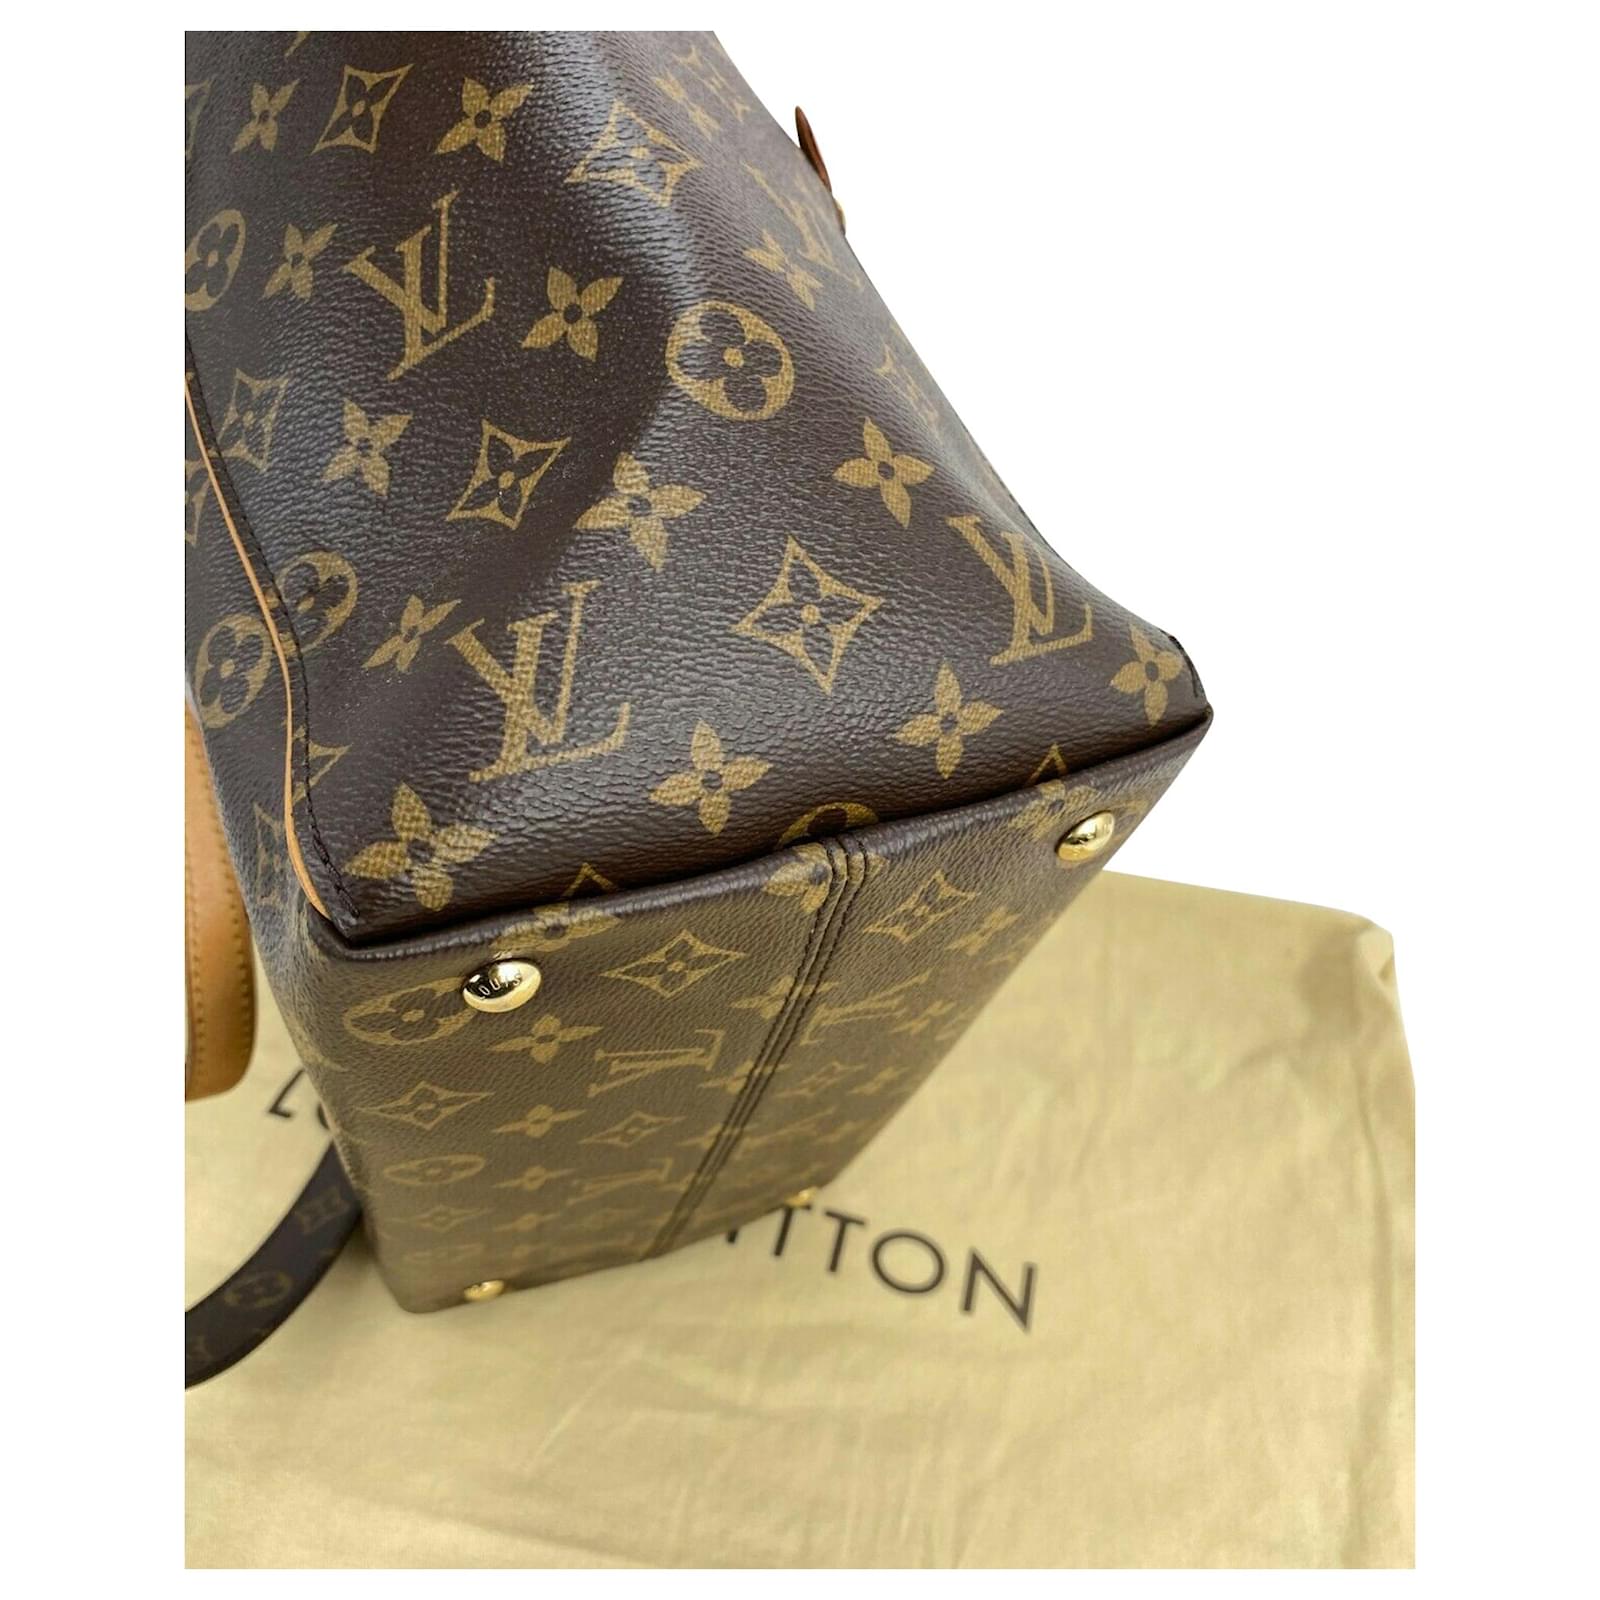 Louis Vuitton Hand Bag Tournelle Monogram MM Hand shoulder Tote Bag M44023